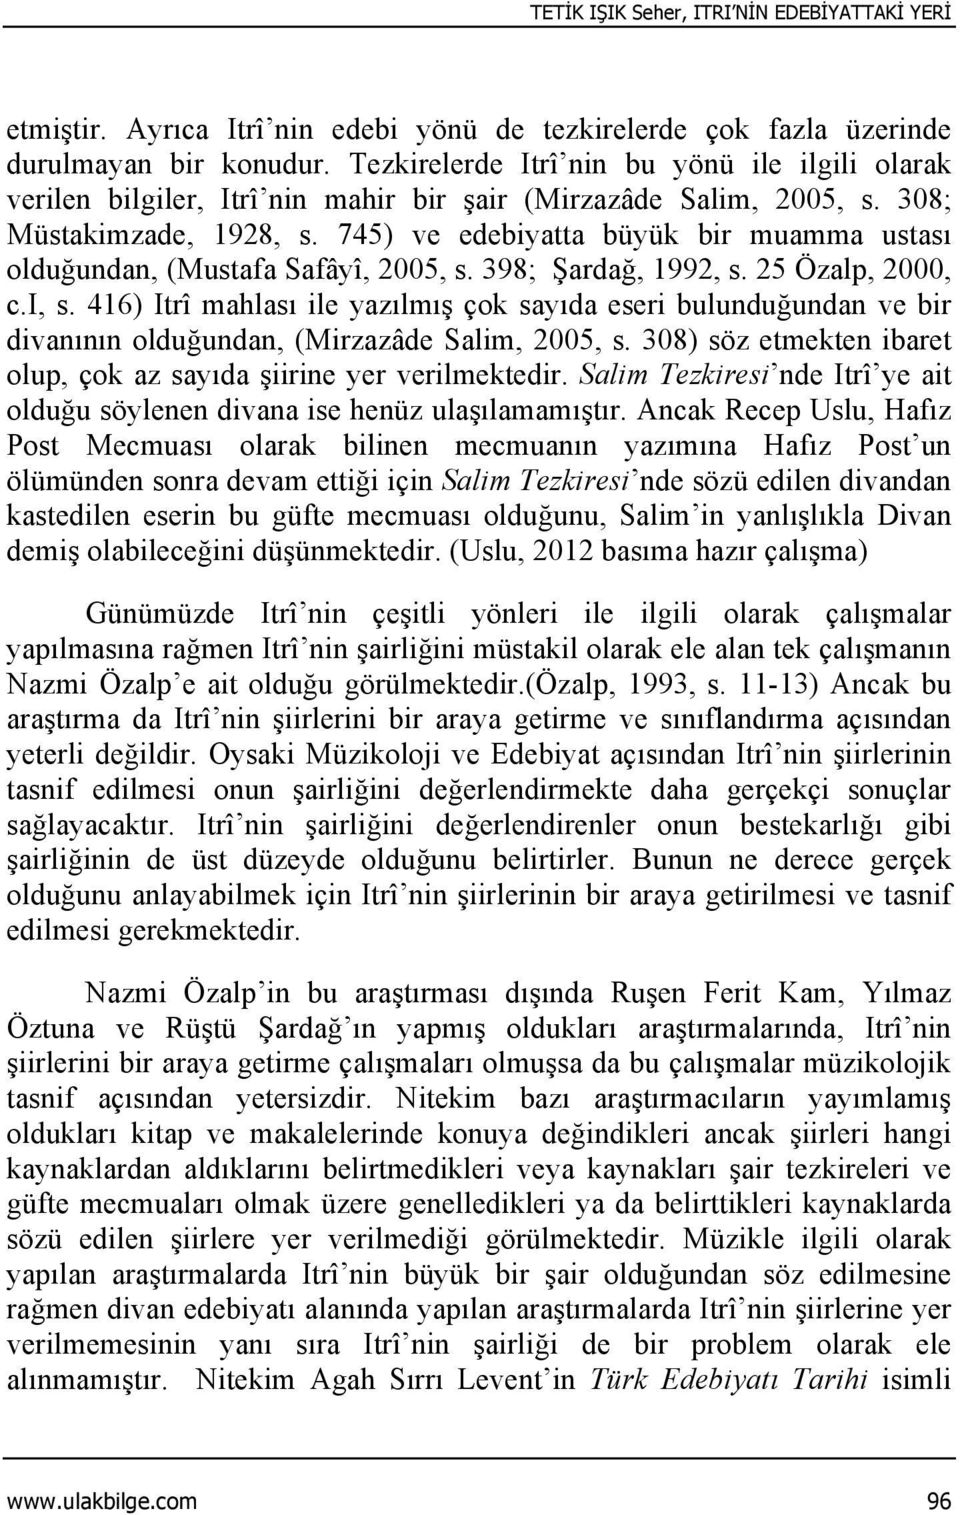 745) ve edebiyatta büyük bir muamma ustası olduğundan, (Mustafa Safâyî, 2005, s. 398; Şardağ, 1992, s. 25 Özalp, 2000, c.i, s.